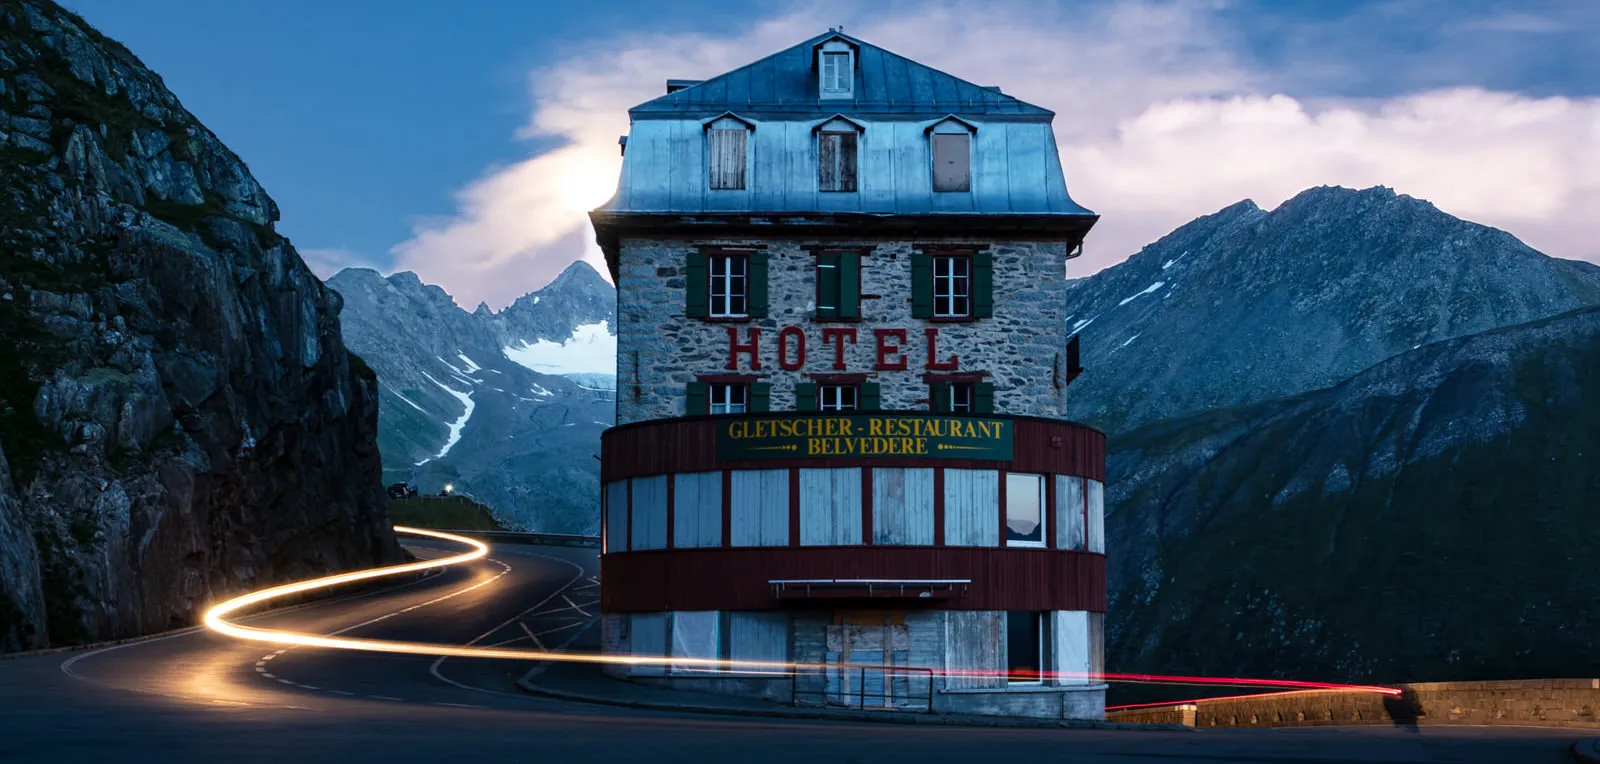 Hotel from Bond Film, “Goldfinger”